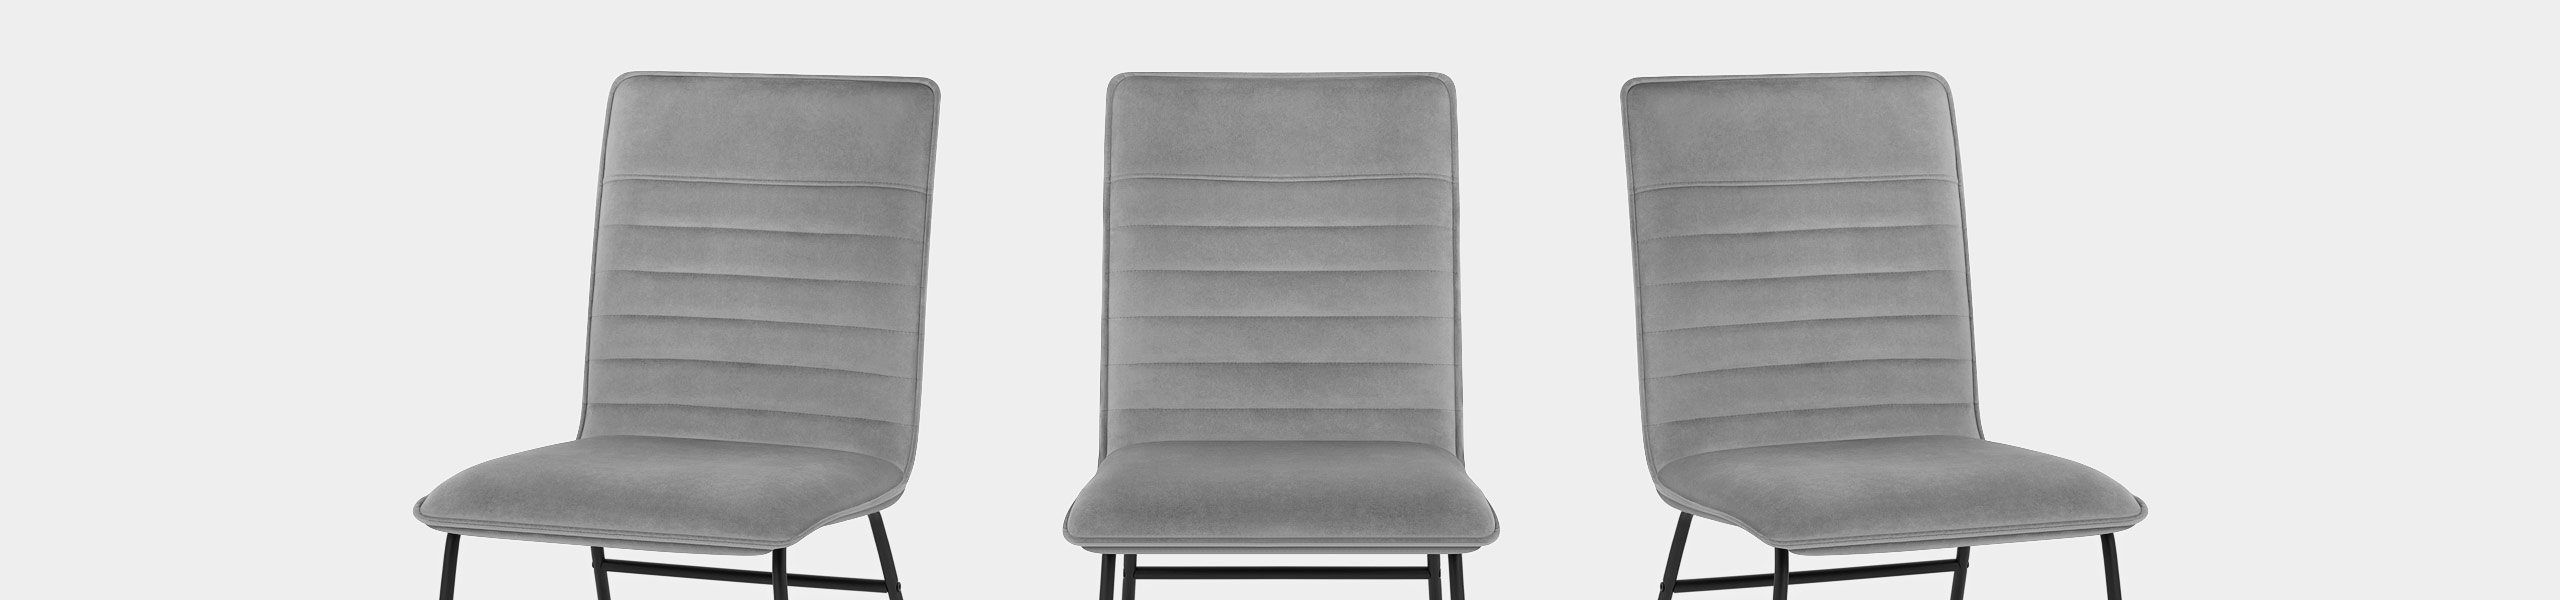 Chevelle Dining Chair Grey Velvet Video Banner